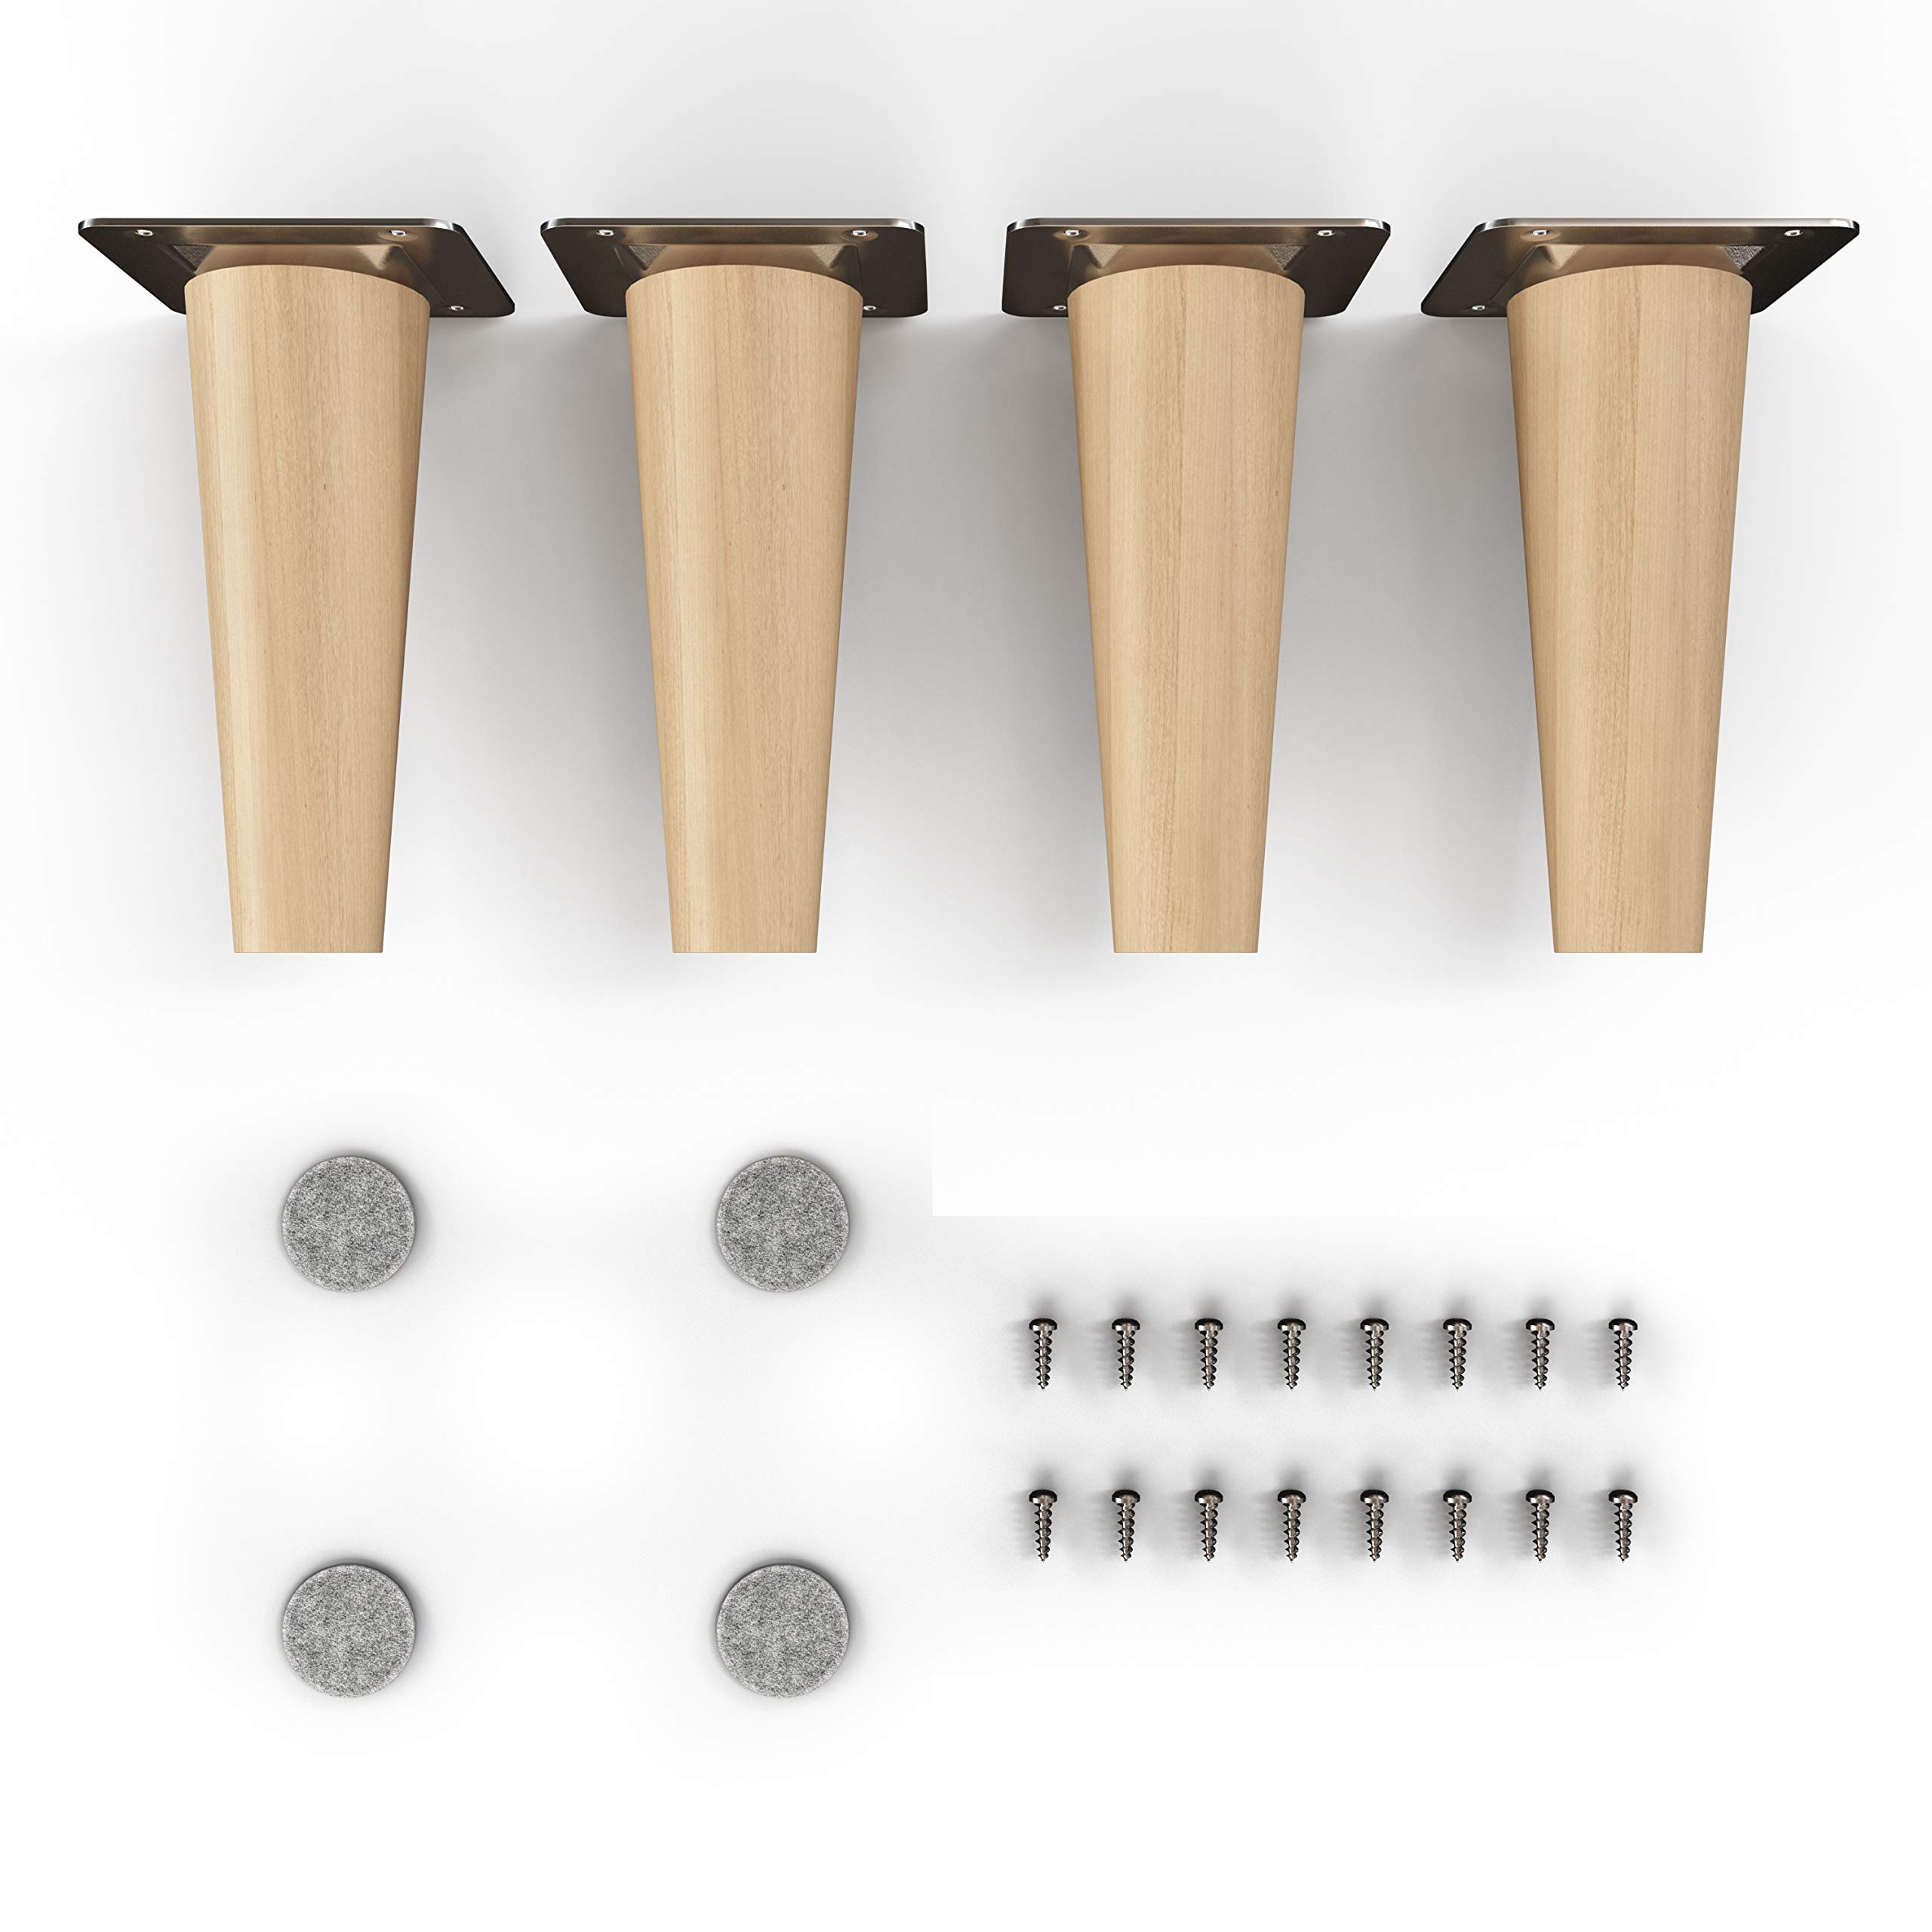 sossai® Holz-Möbelfüße - Clif Round | Öl-Finish | Höhe: 12 cm | HMF1 | rund, konisch (gerade Ausführung) | Material: Massivholz (Buche) | für Stühle, Tische, Schränke etc.